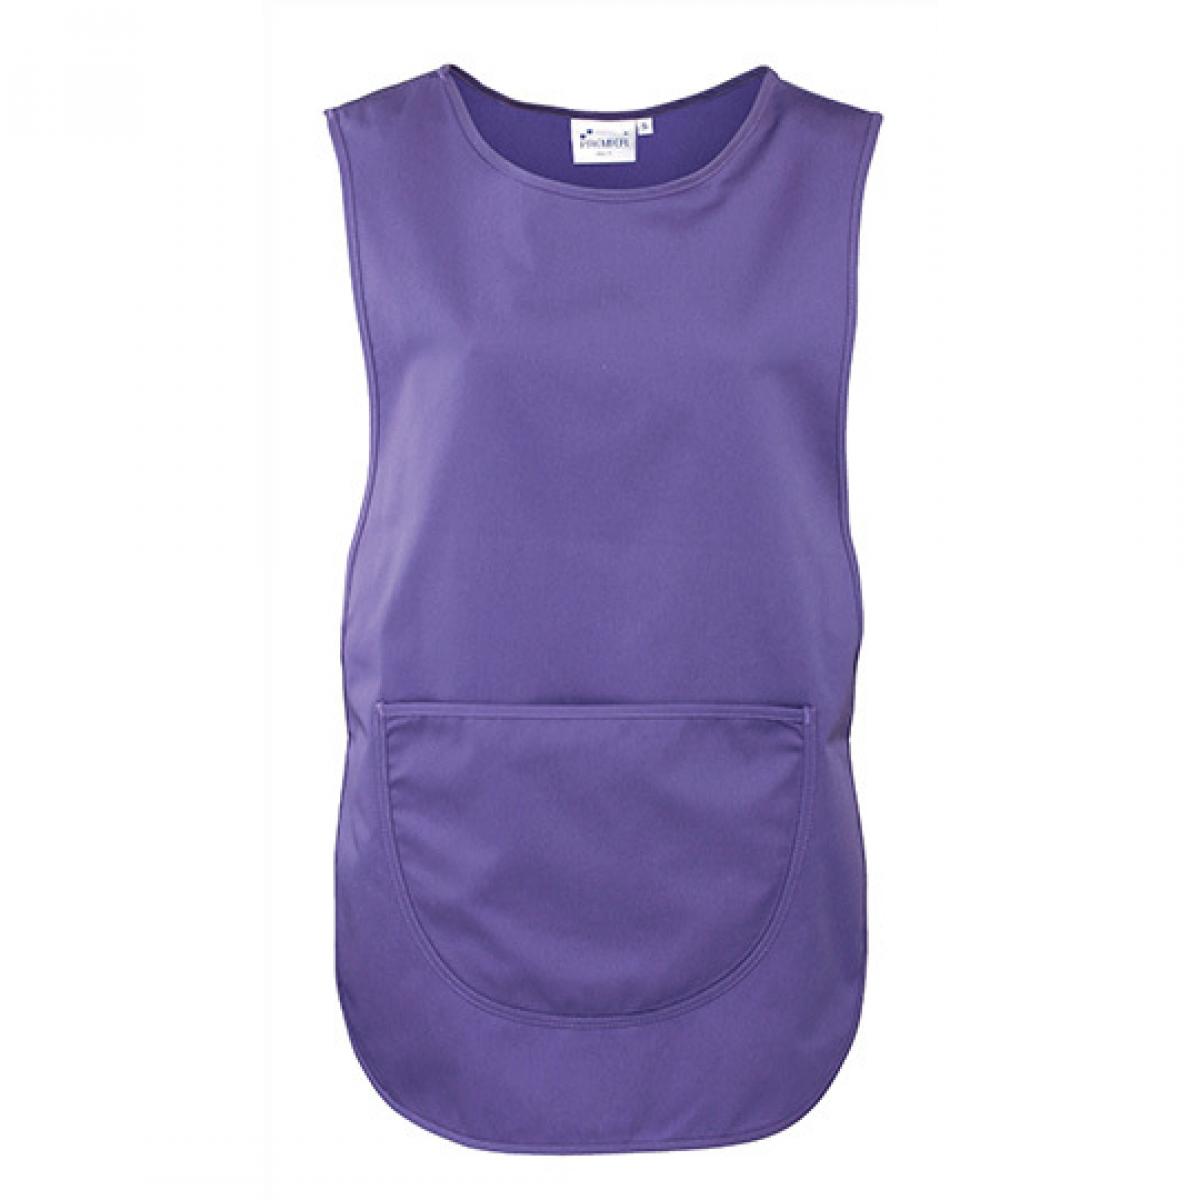 Hersteller: Premier Workwear Herstellernummer: PR171 Artikelbezeichnung: Women`s Pocket Tabard - Waschbar bis 60 °C Farbe: Purple (ca. Pantone 269)